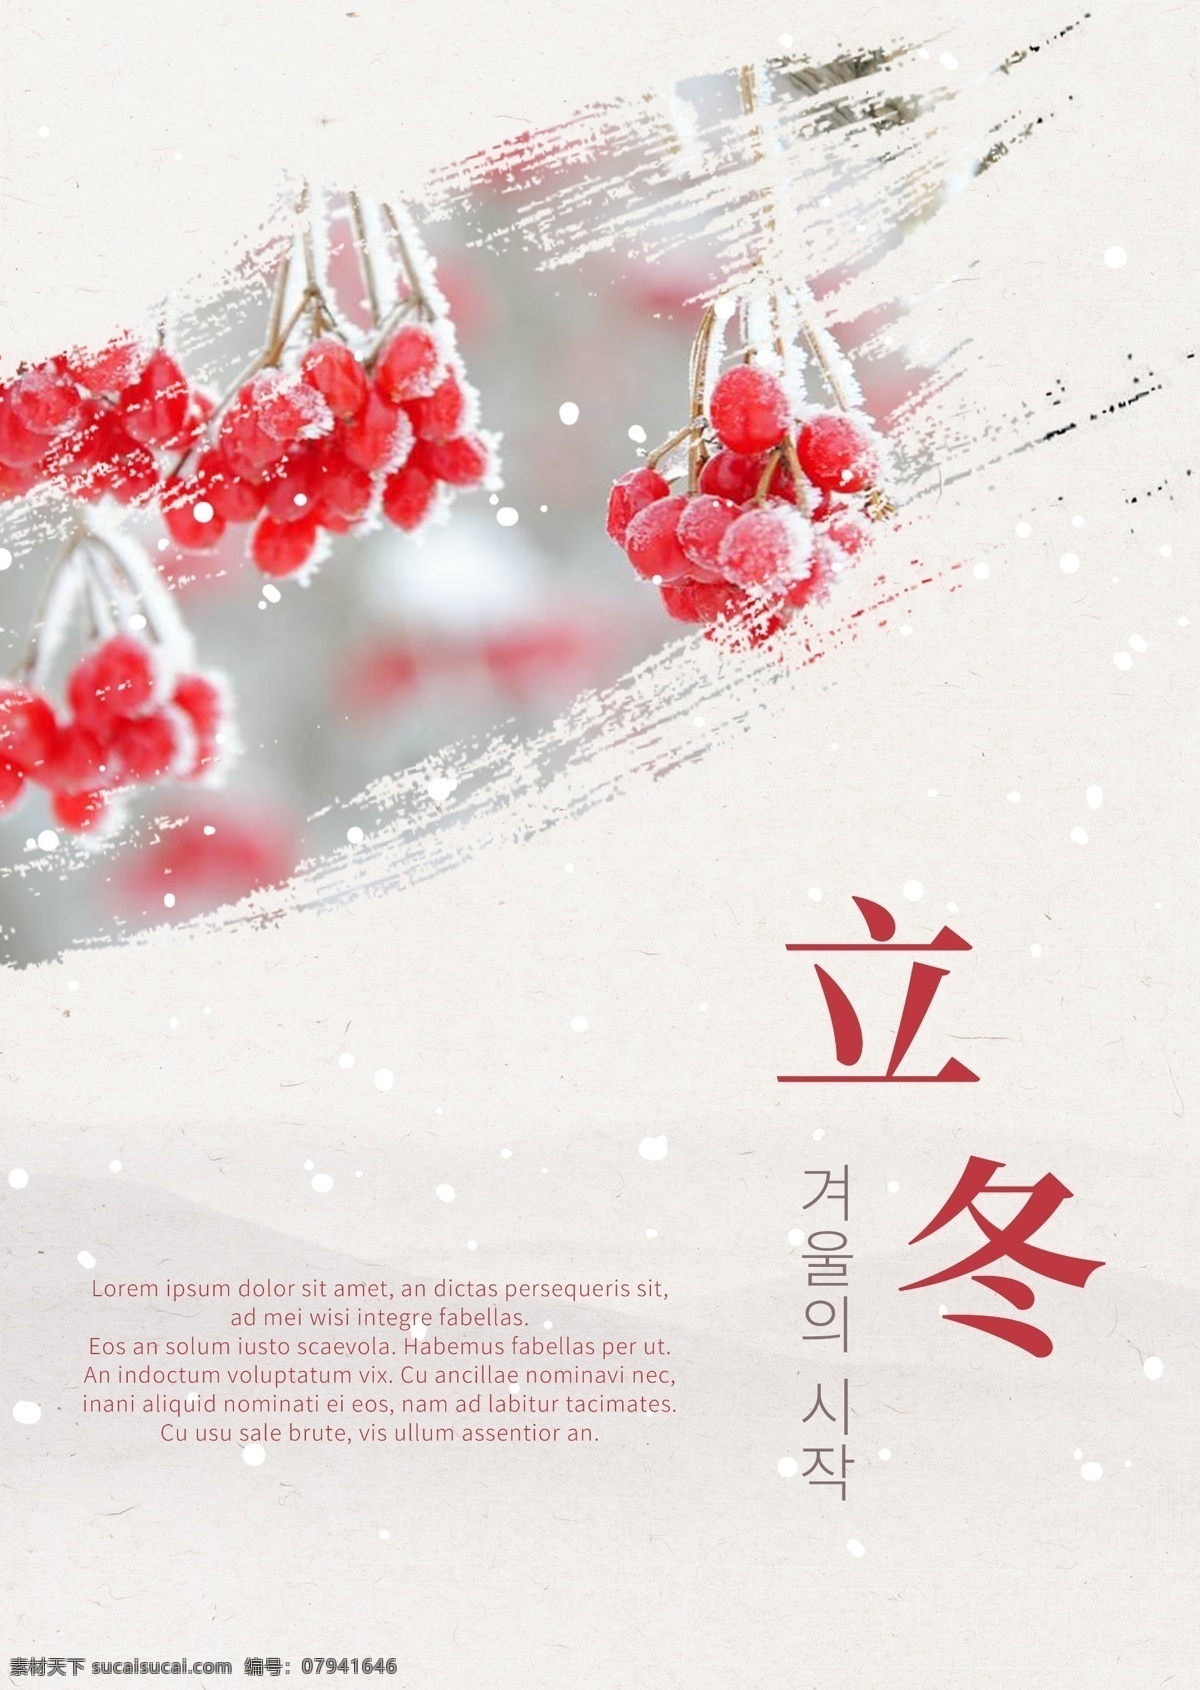 白色 红色 果子 时尚 冬天 海报 颜色 简单 墨 冬季 朝鲜的 中文 英语 空白 红色水果 美丽 灰色